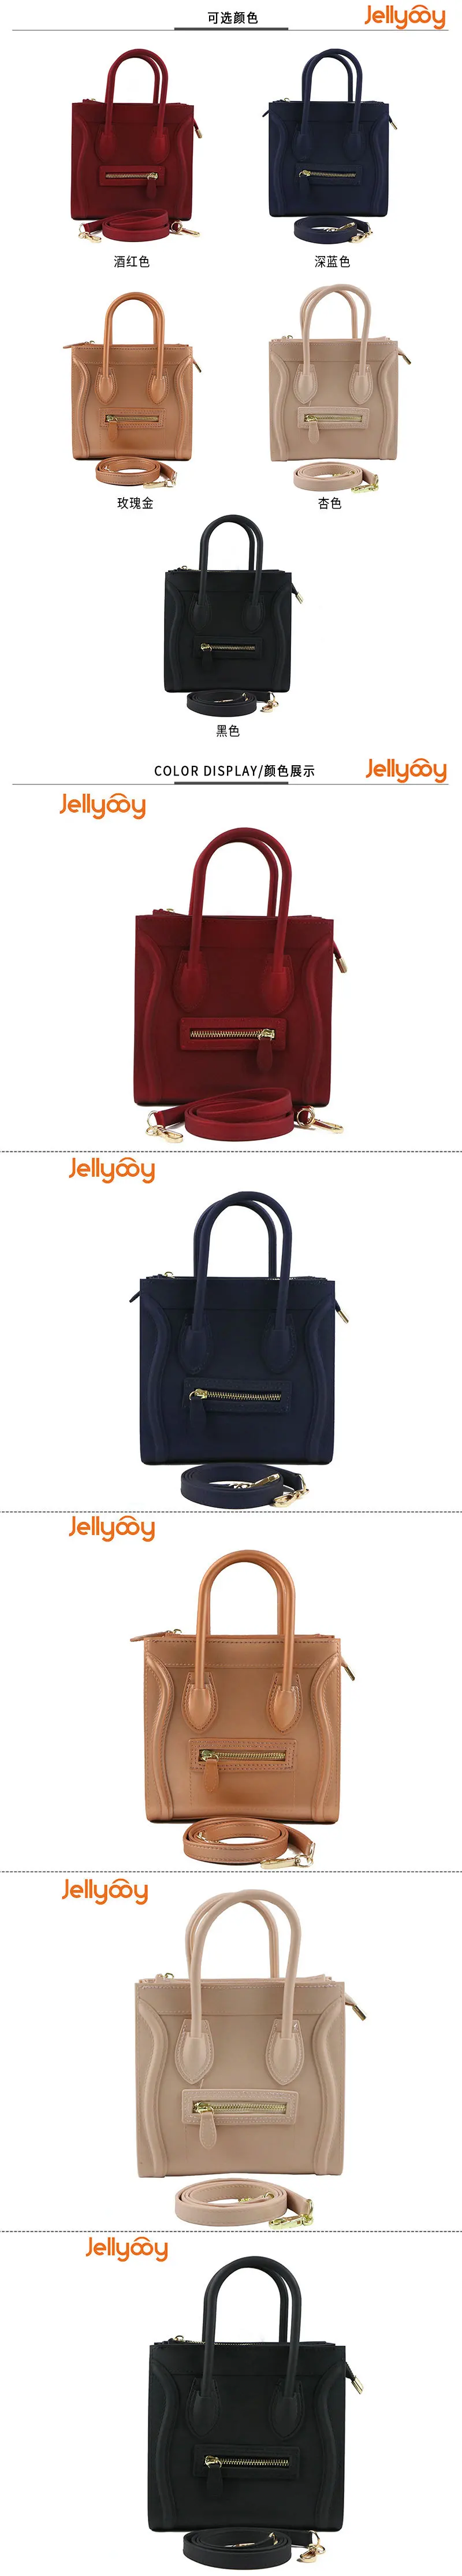 Летние новые ПВХ модные сумки матовые желеобразные смайлики дамские сумки через плечо диагональные женские сумочки и сумочки